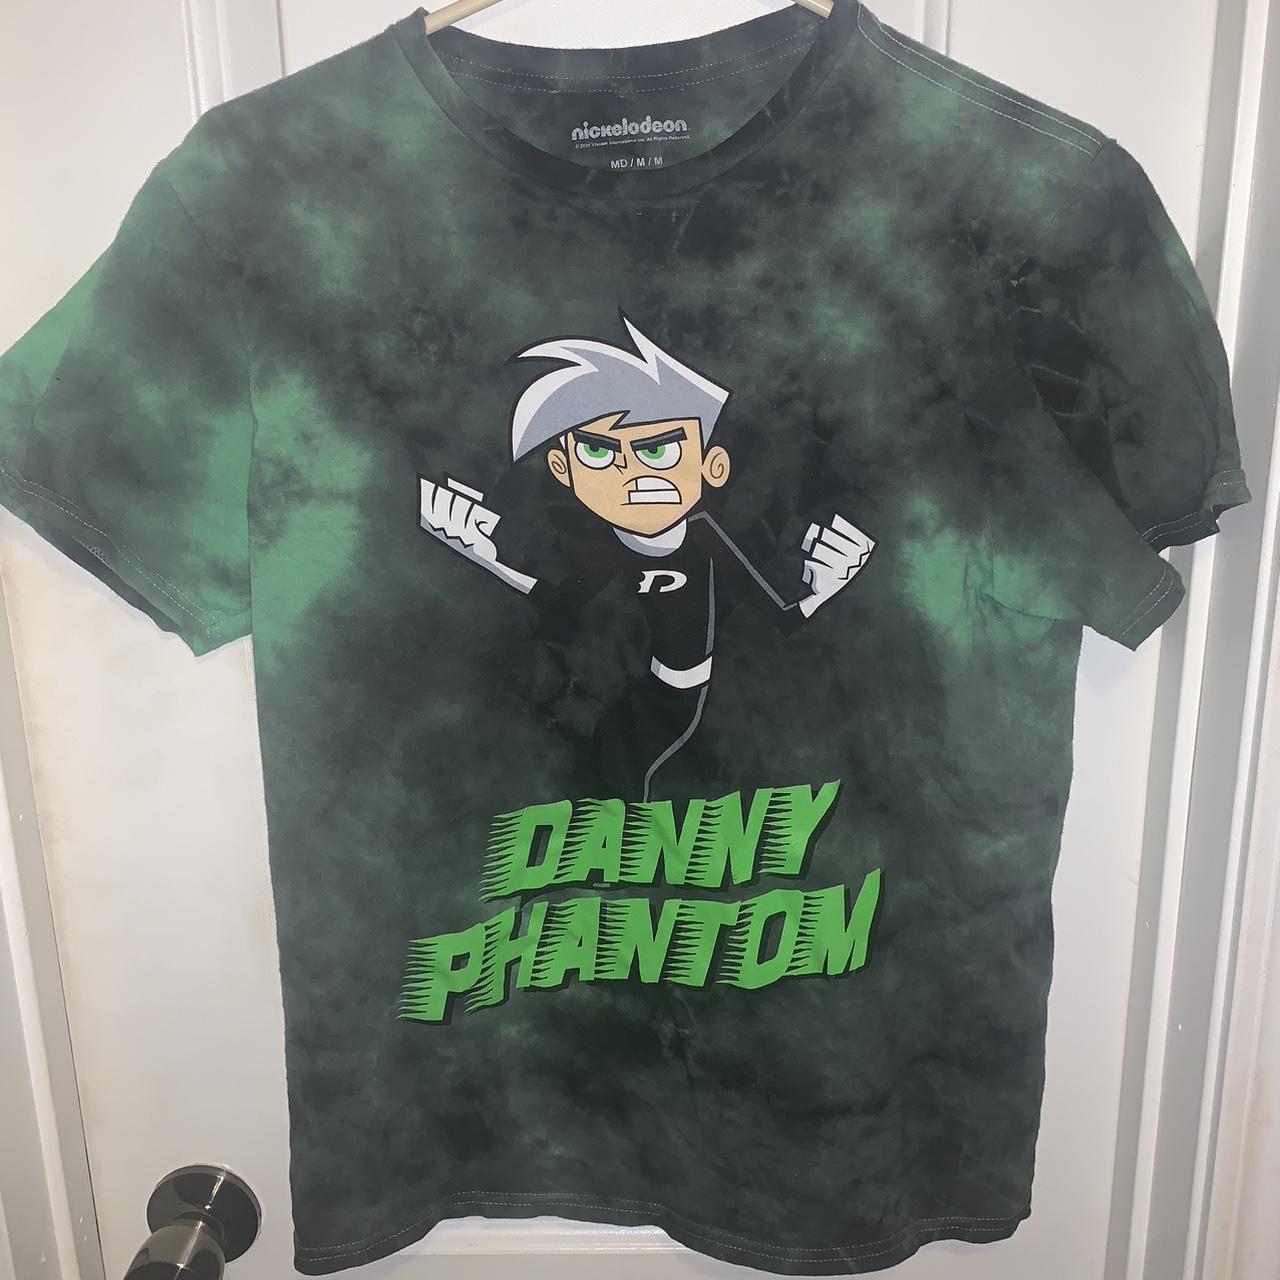 danny phantom logo shirt